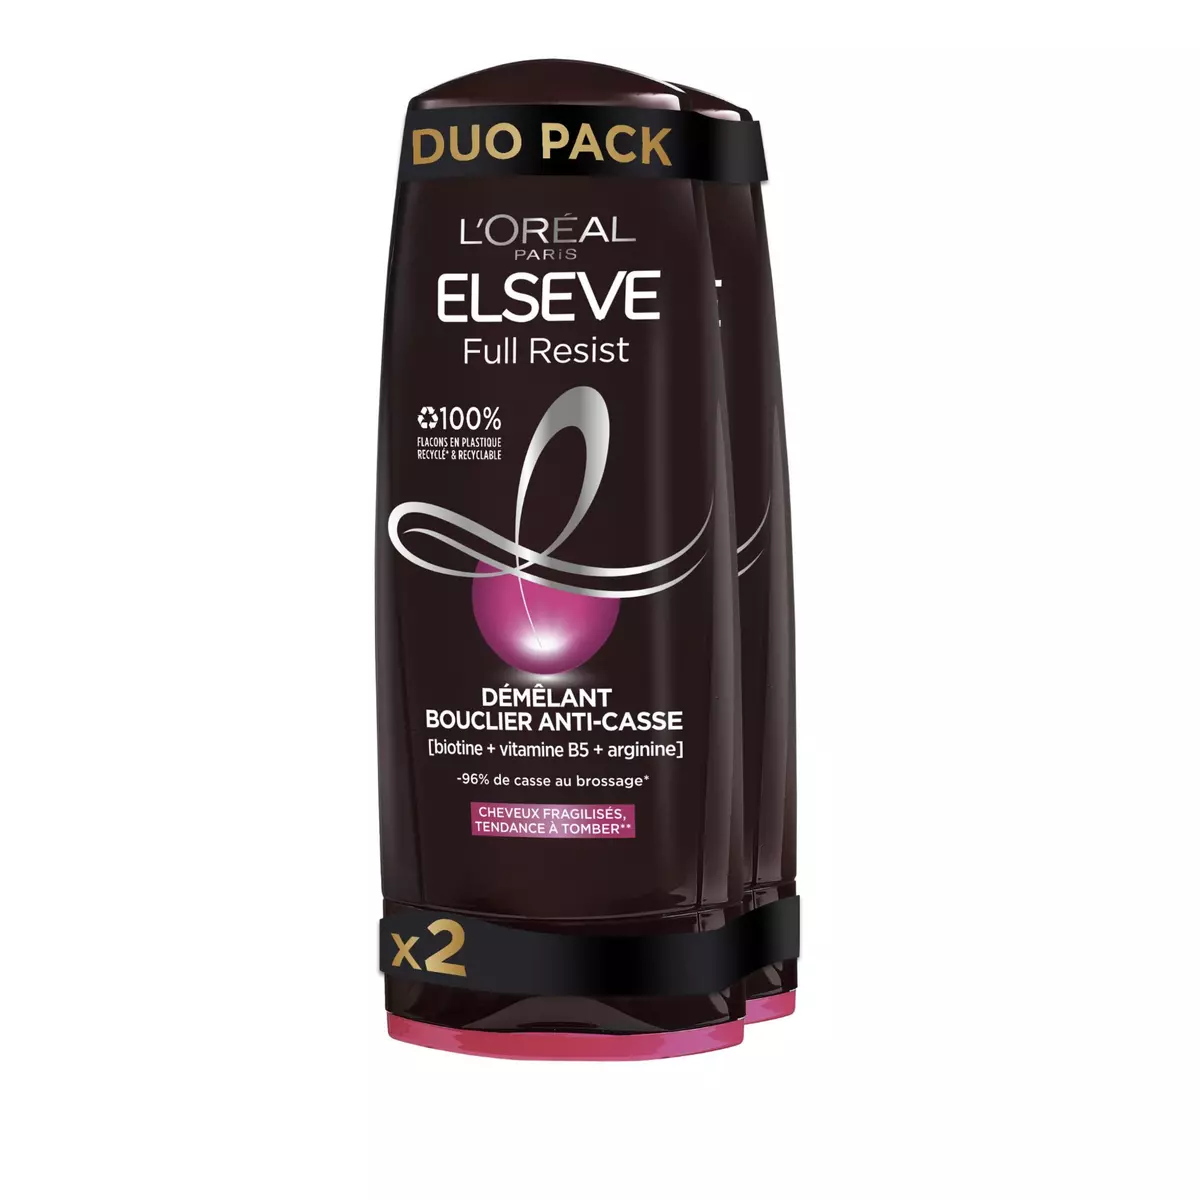 ELSEVE Après-shampooing Full resist démêlant bouclier anti-casse cheveux fragilisés 2x200ml